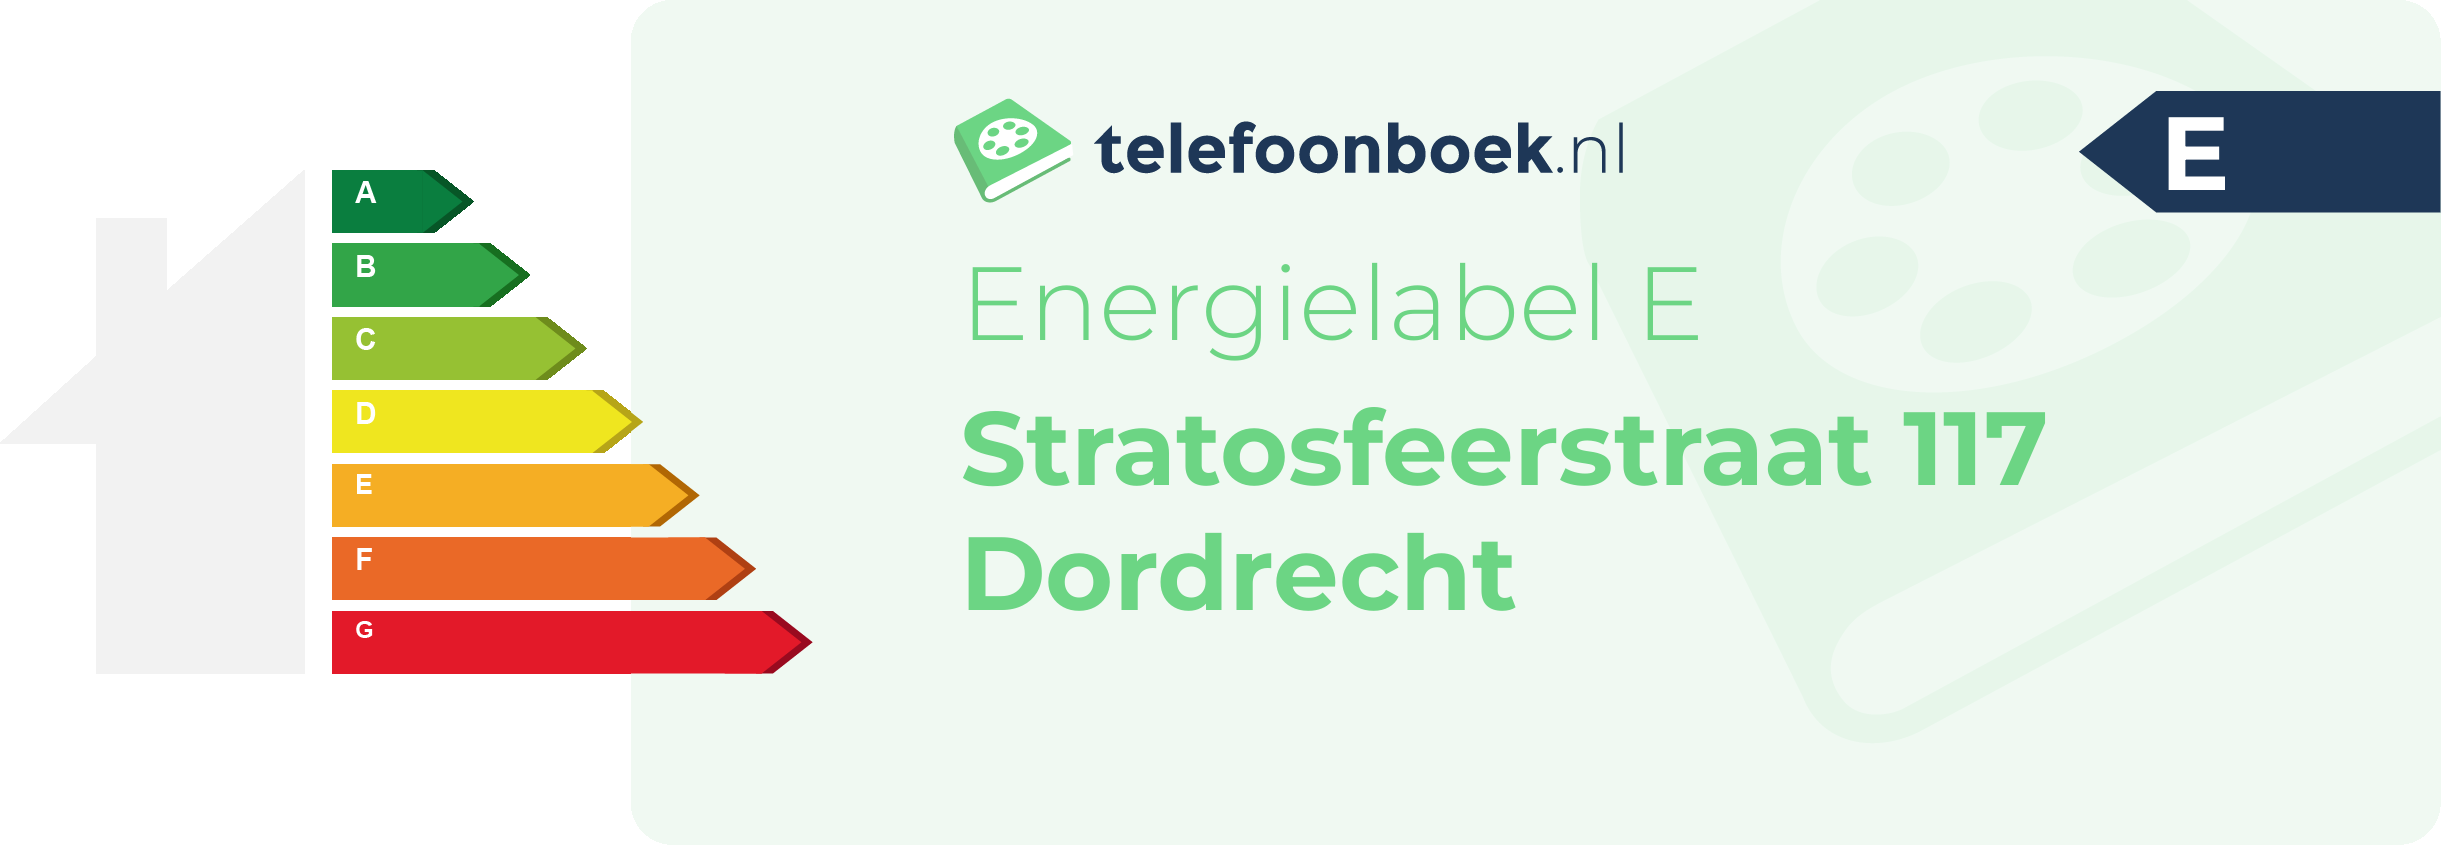 Energielabel Stratosfeerstraat 117 Dordrecht